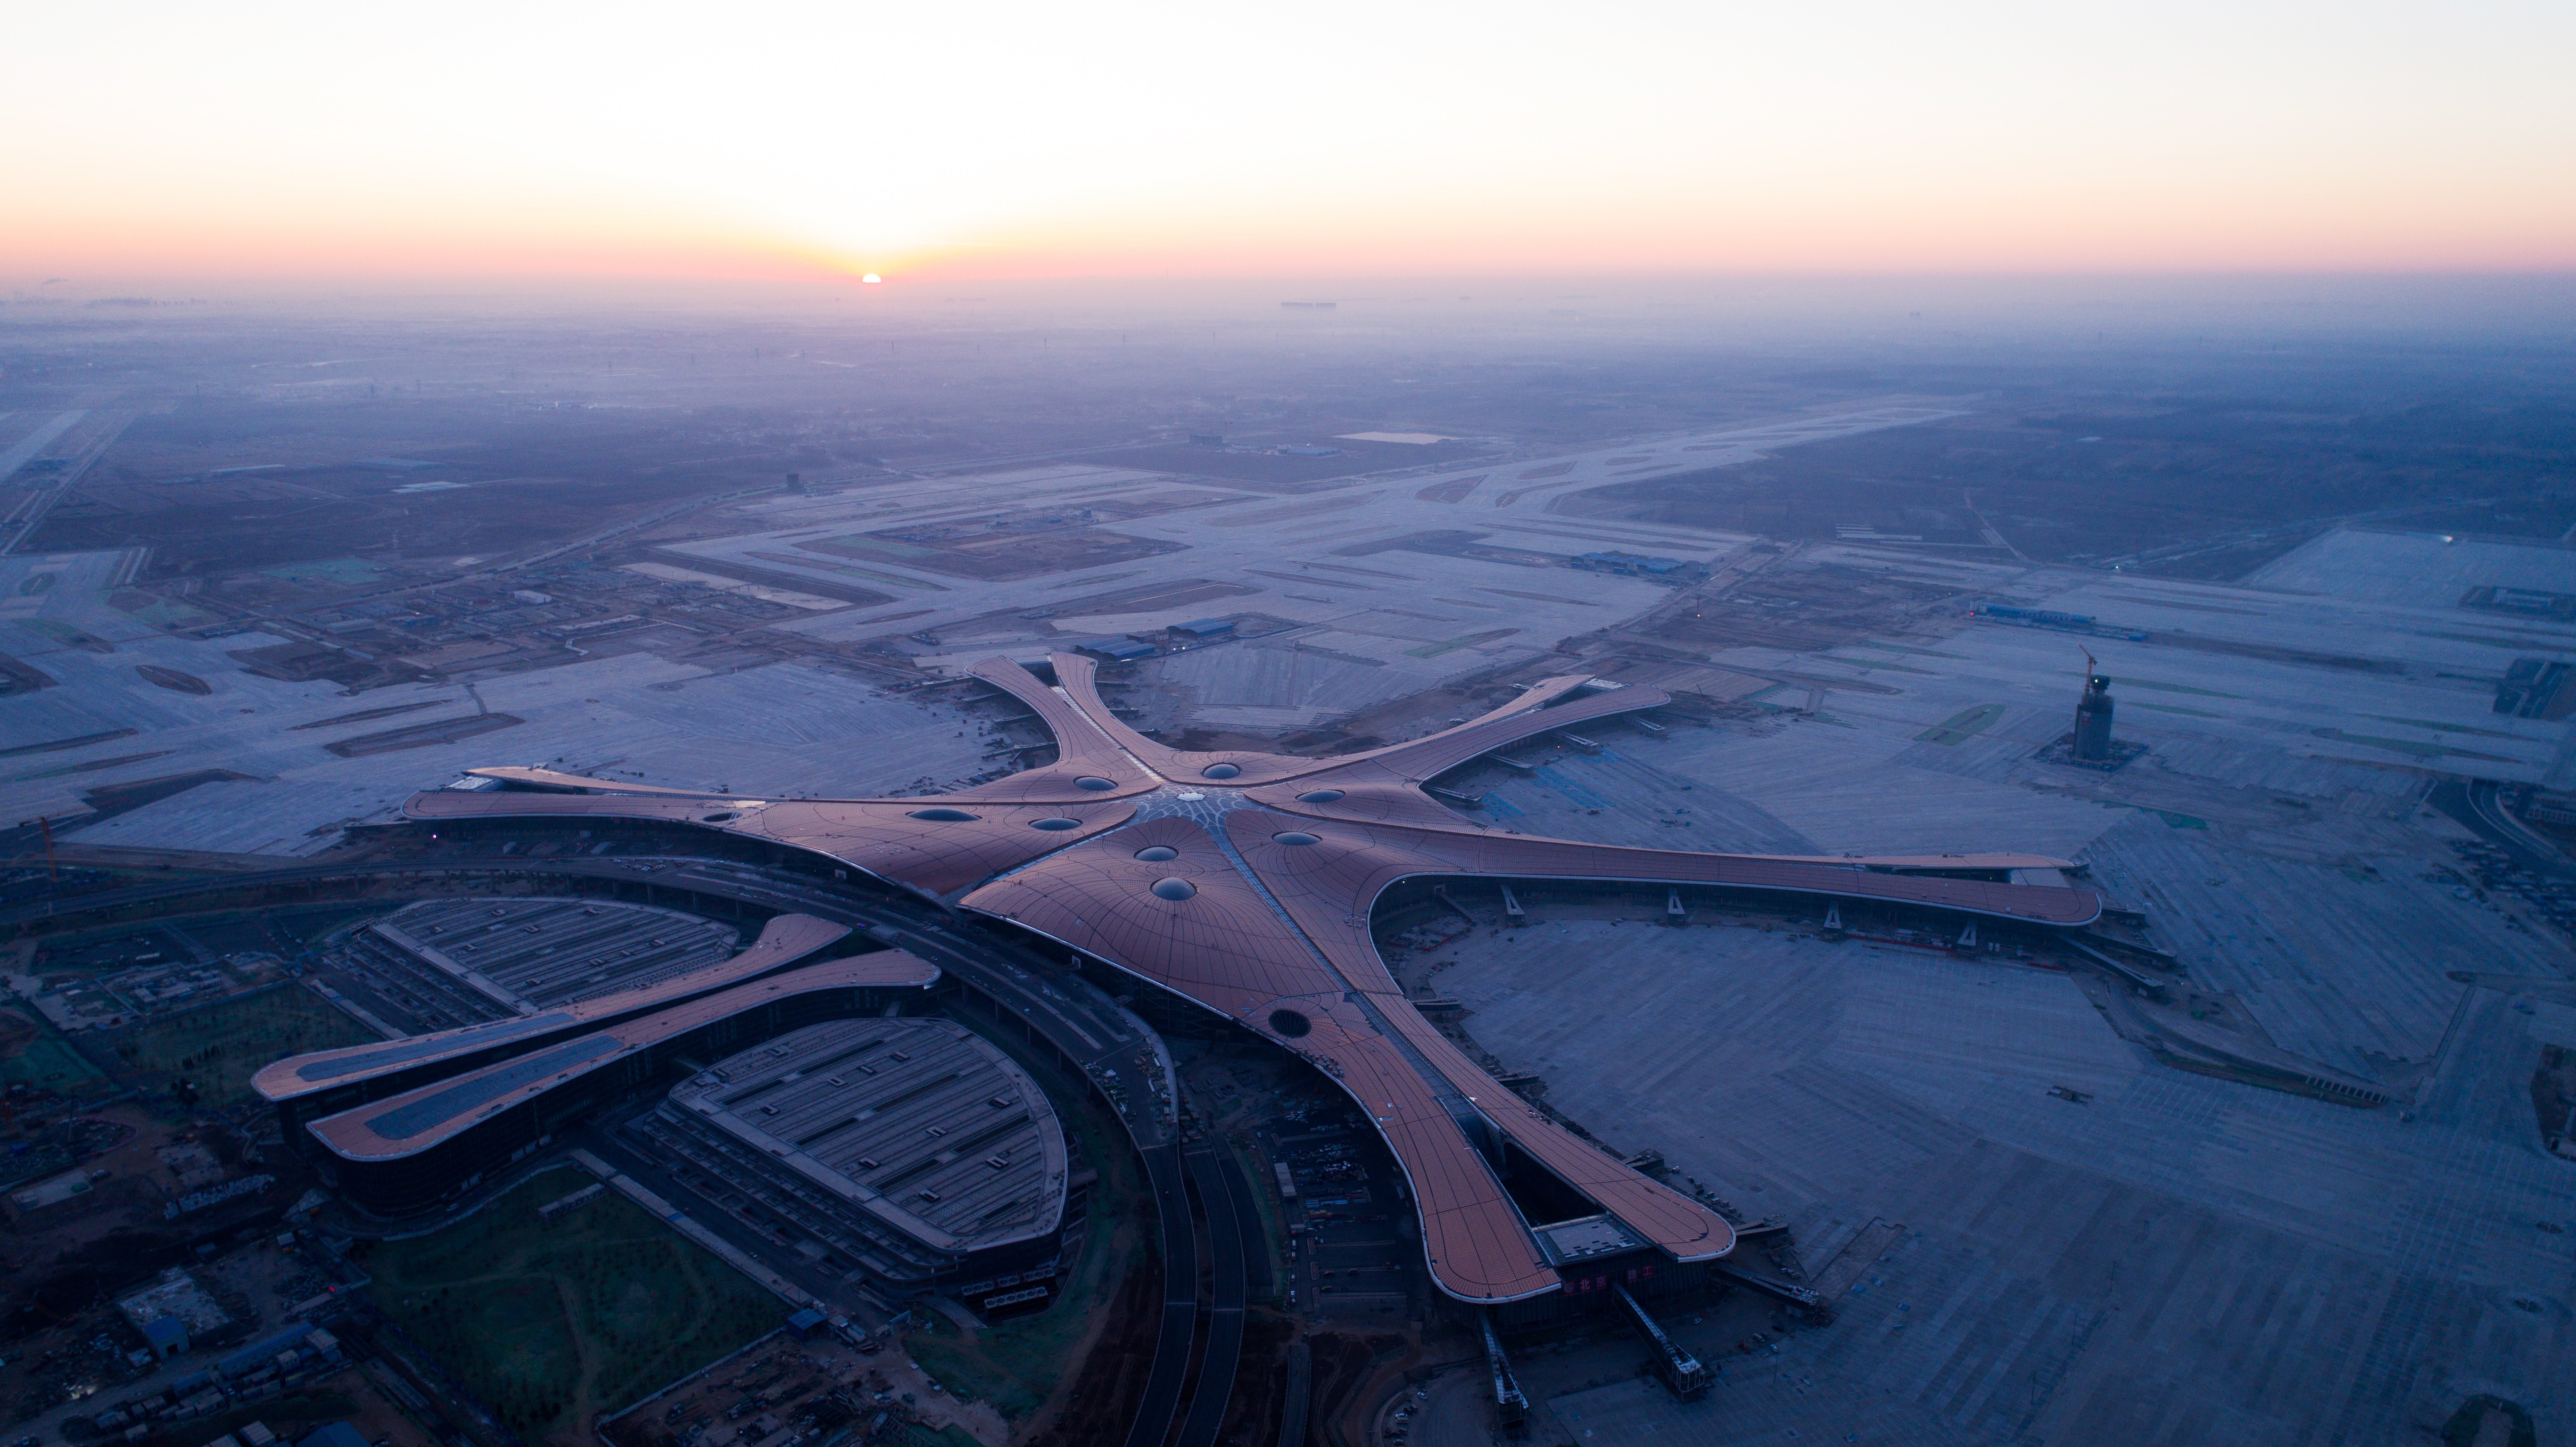 北京大兴国际机场主航站楼外立面完整亮相